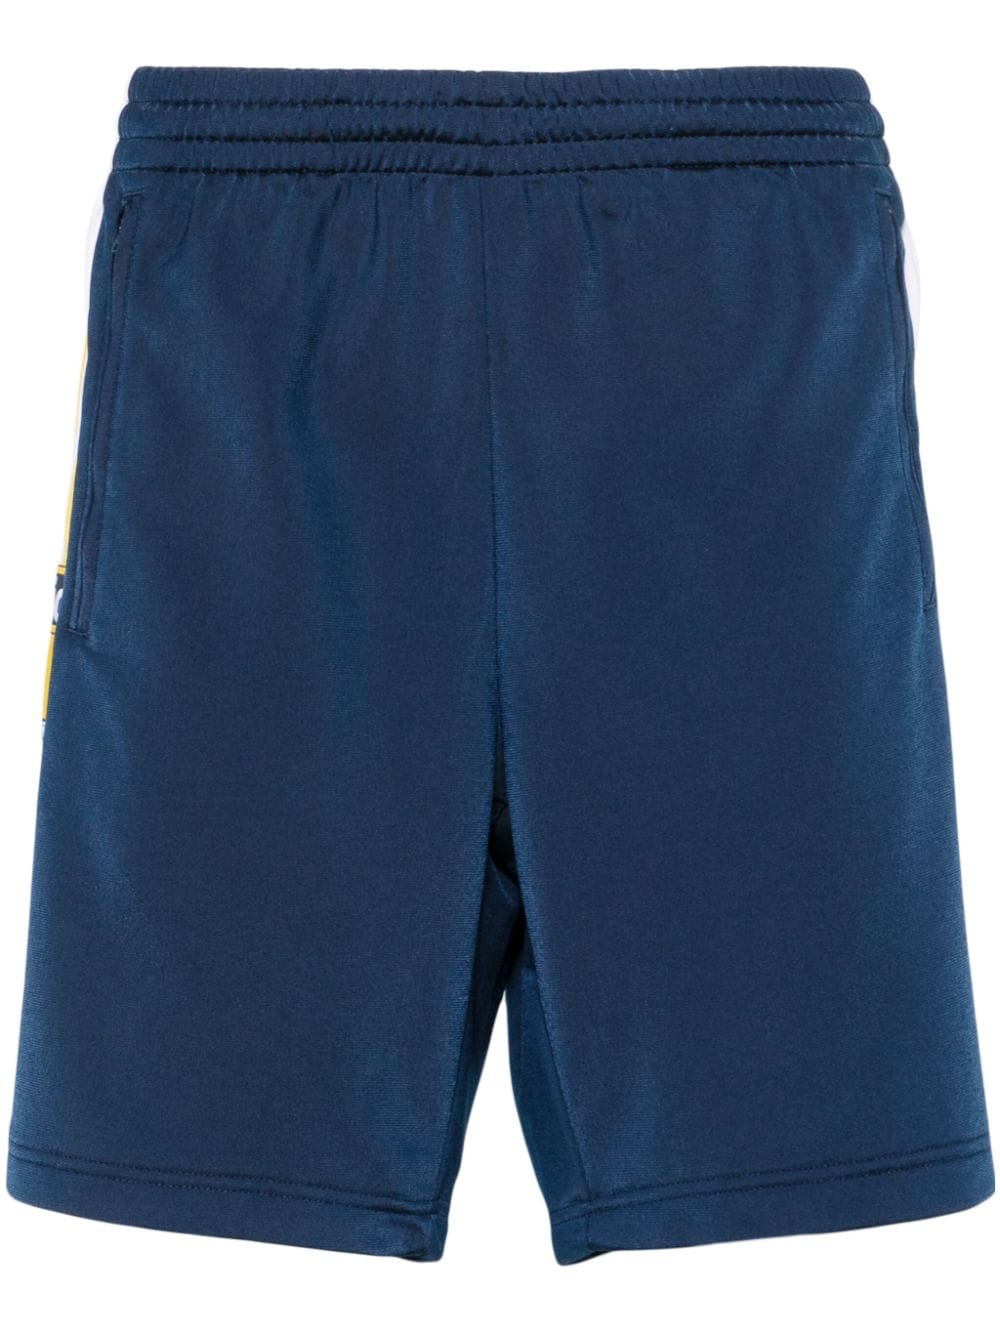 Adidas Originals Adicolor Adibreak Track Pants In Blue